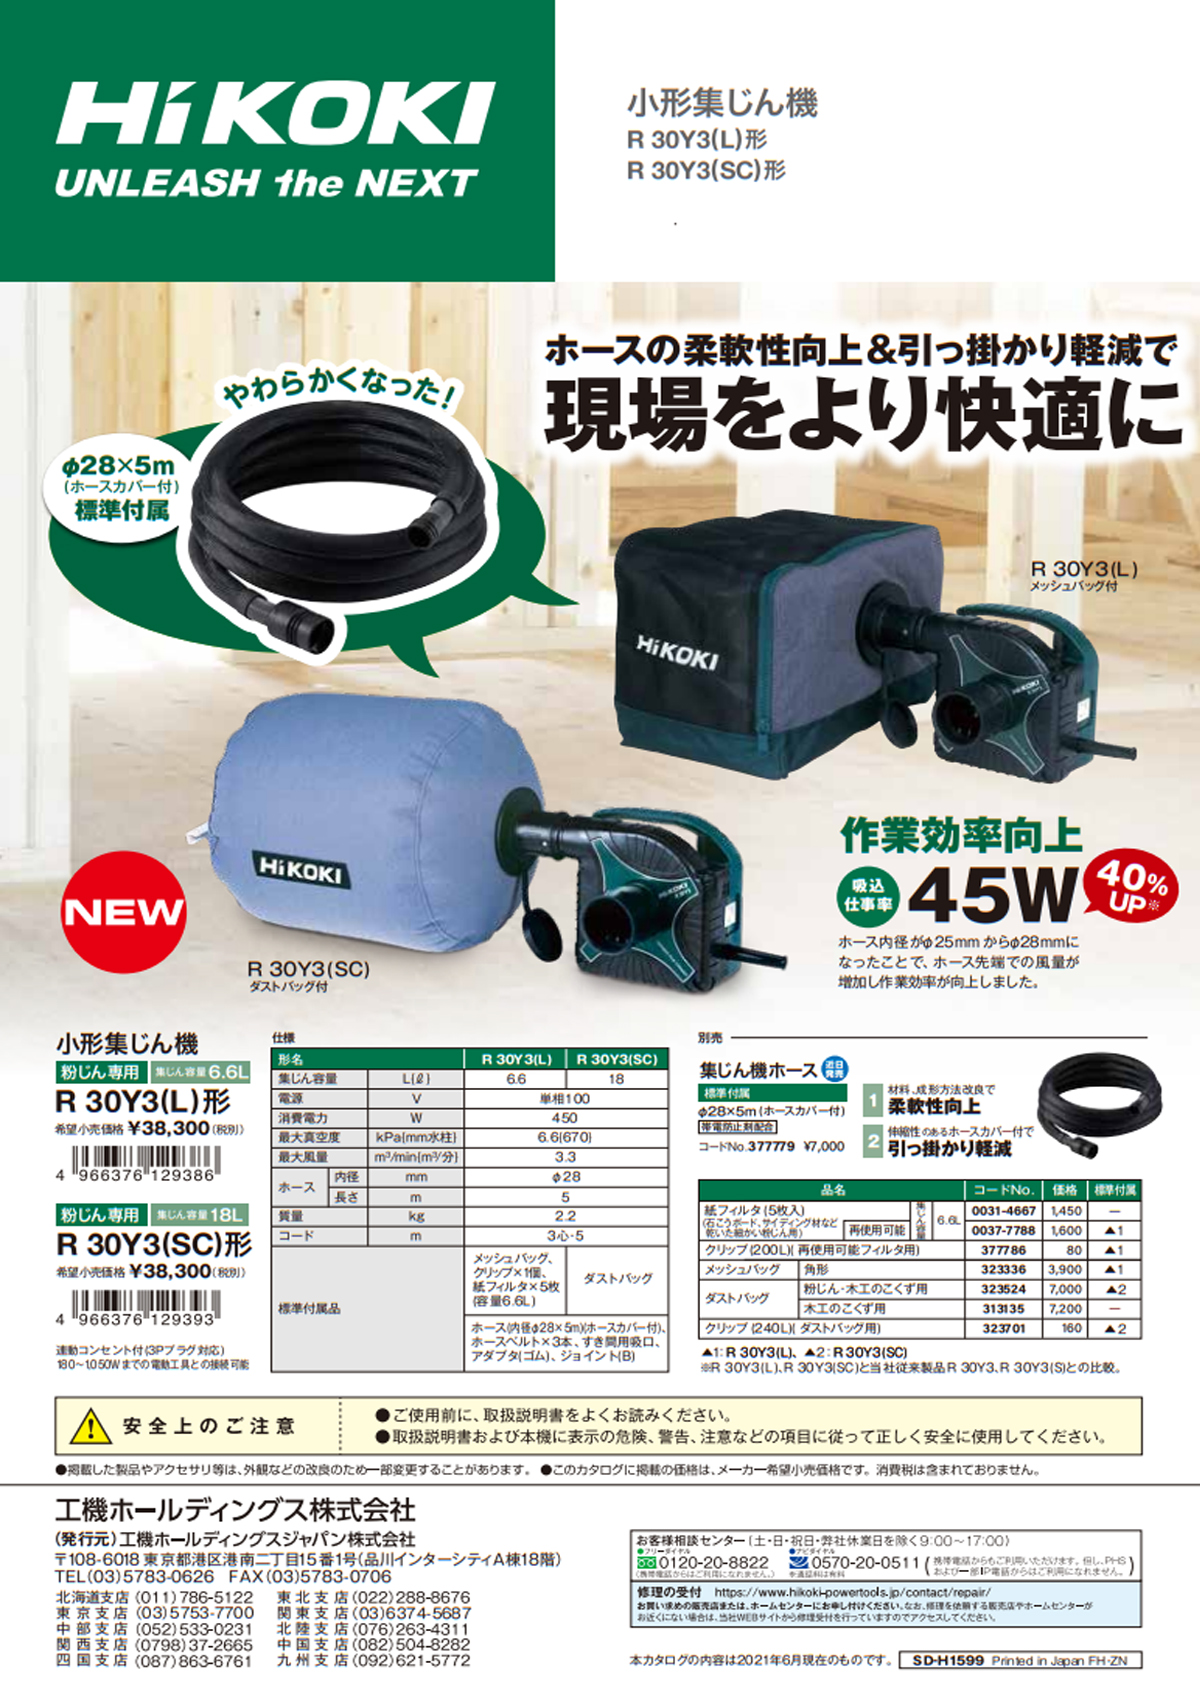 16,799円【希少品】HIKOKI 小型集塵機 R30Y3